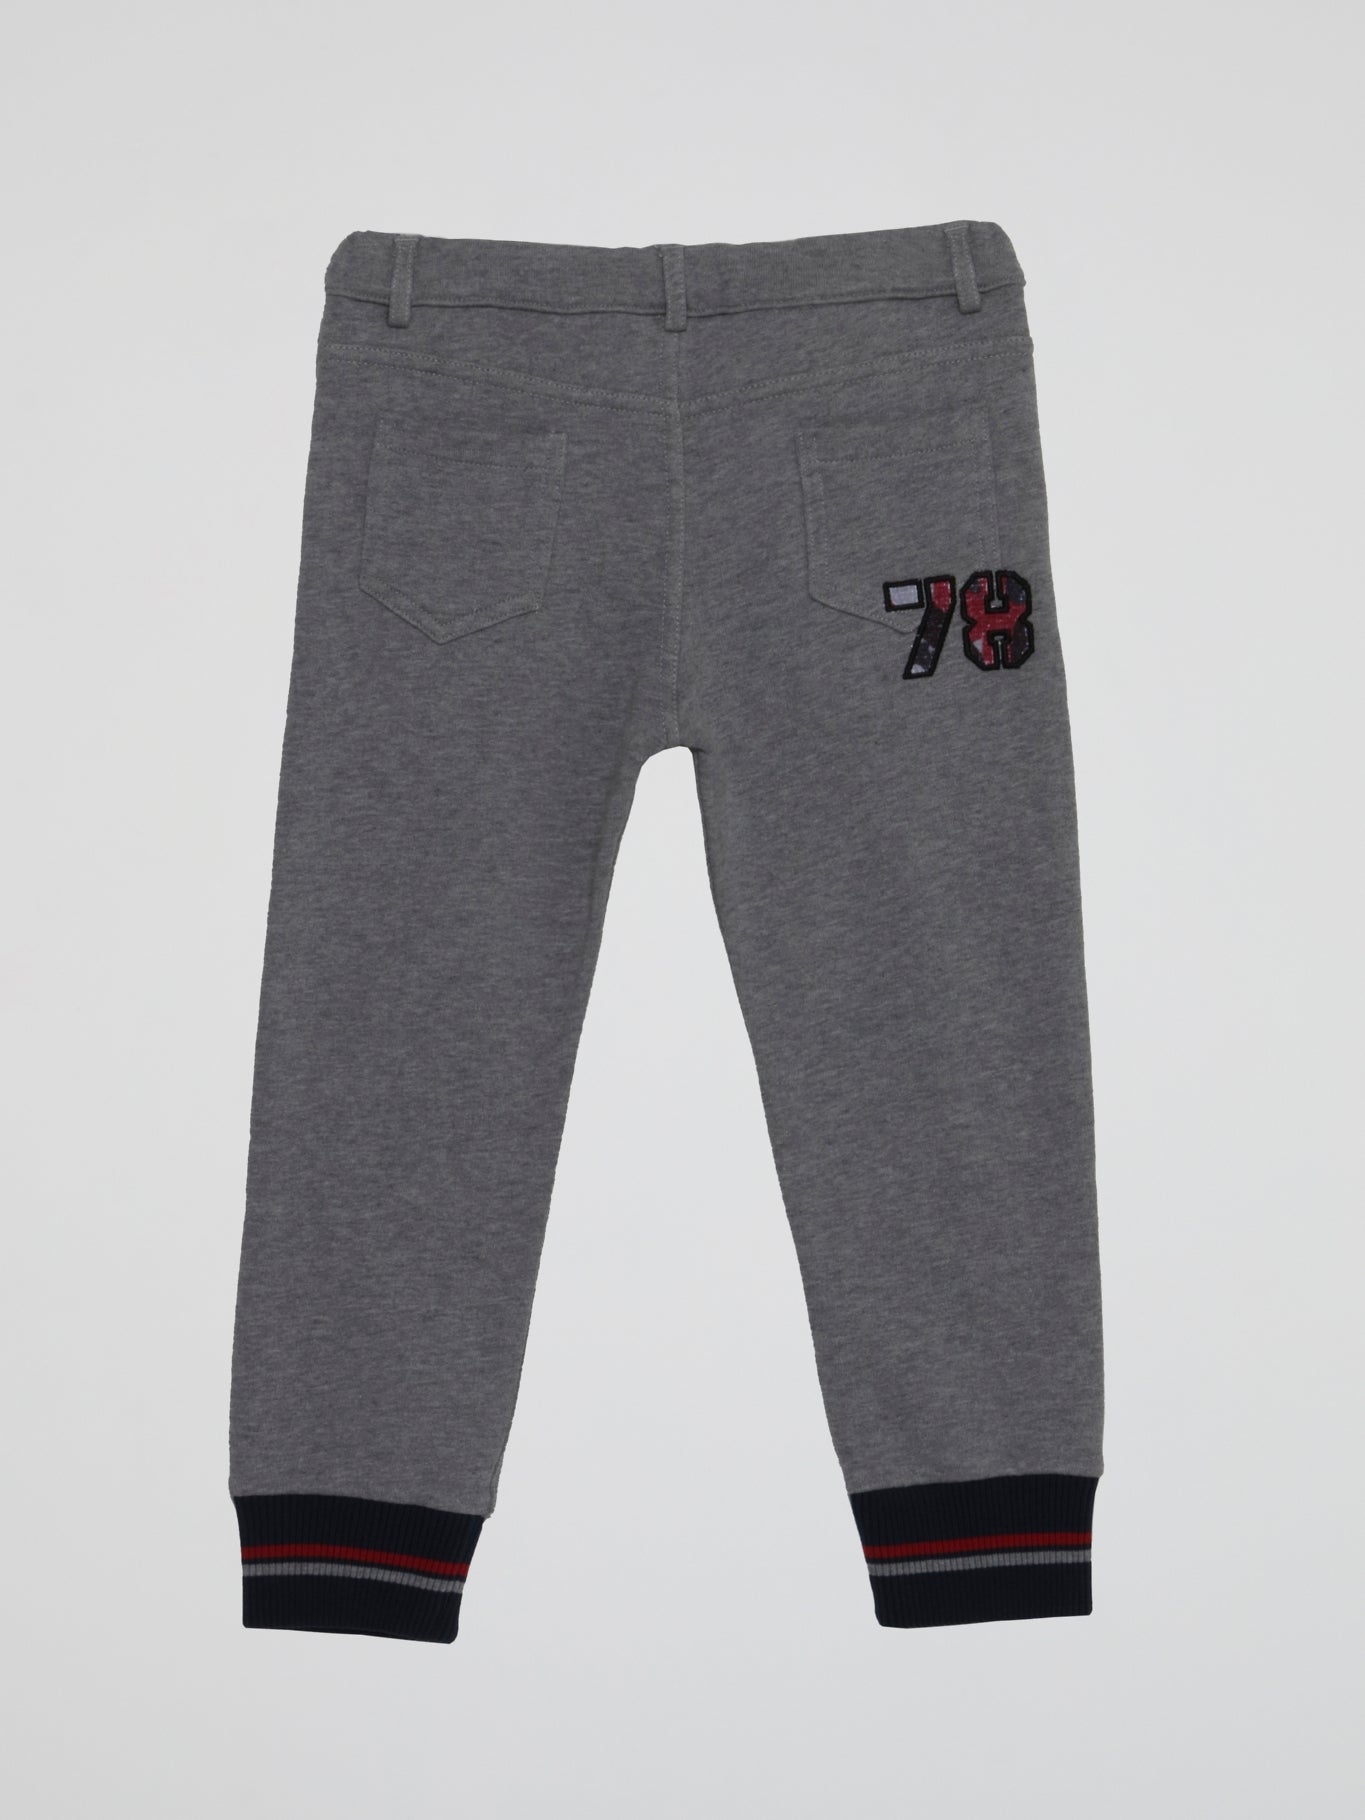 Grey Appliquéd Jogging Trousers (Kids)